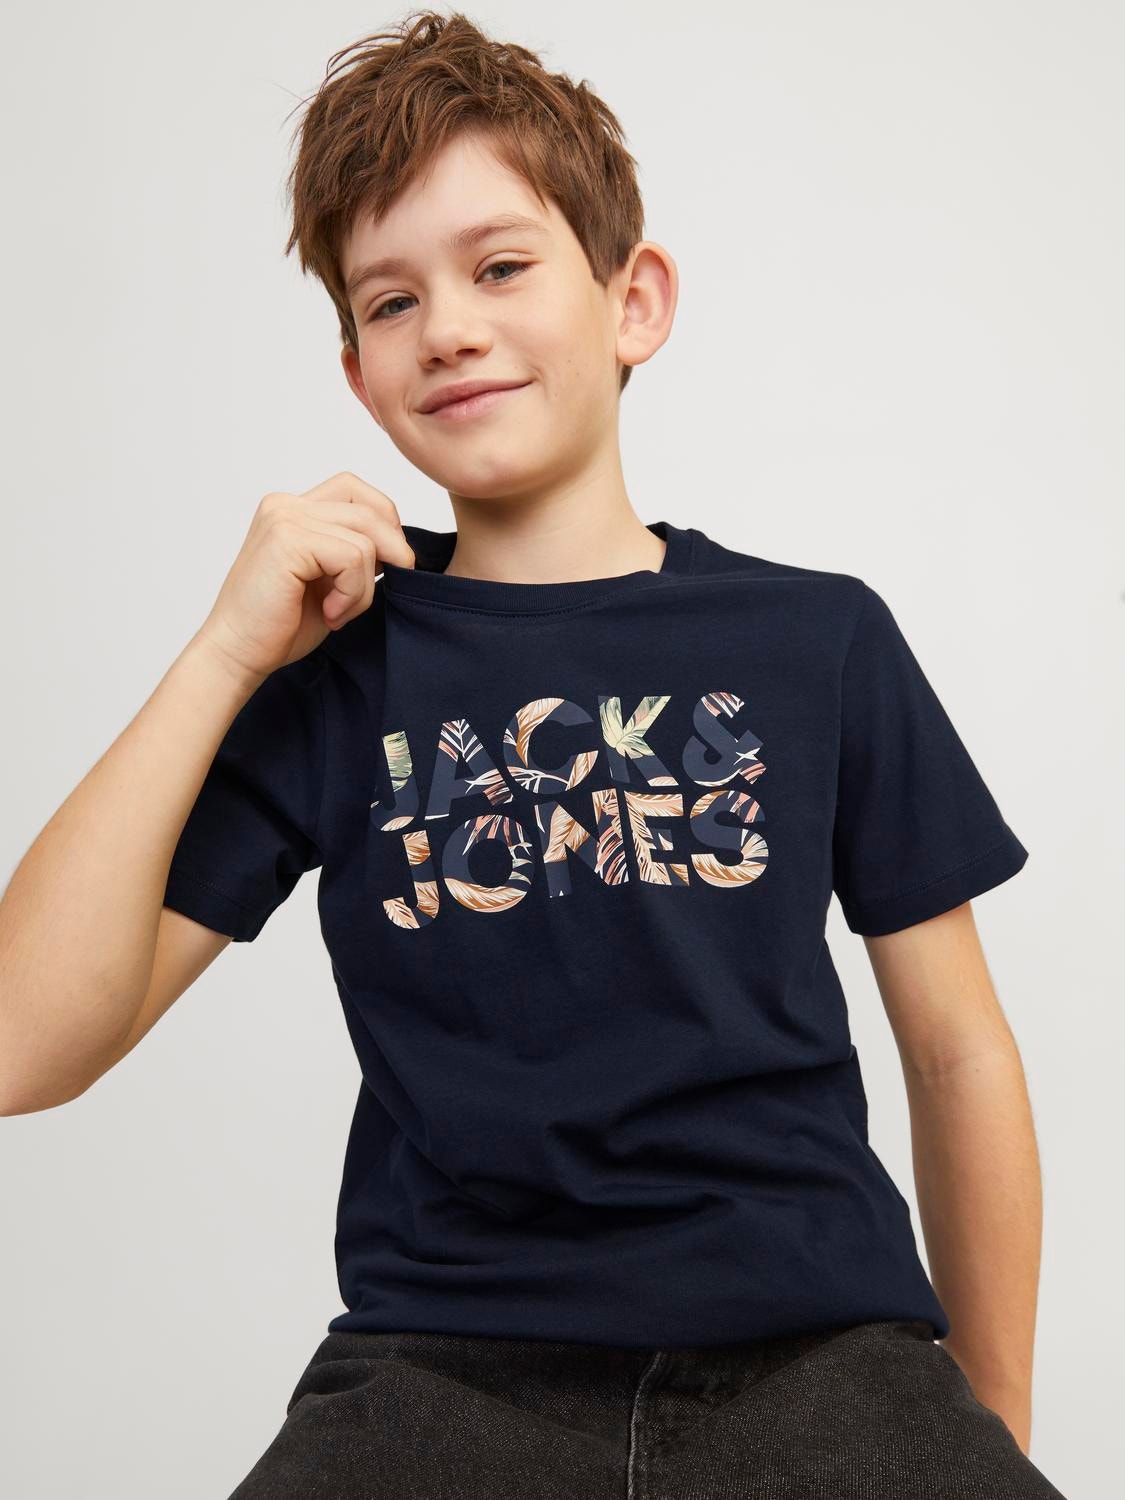 Jack & Jones Bedrukt T-shirt Voor jongens -Navy Blazer - 12250800